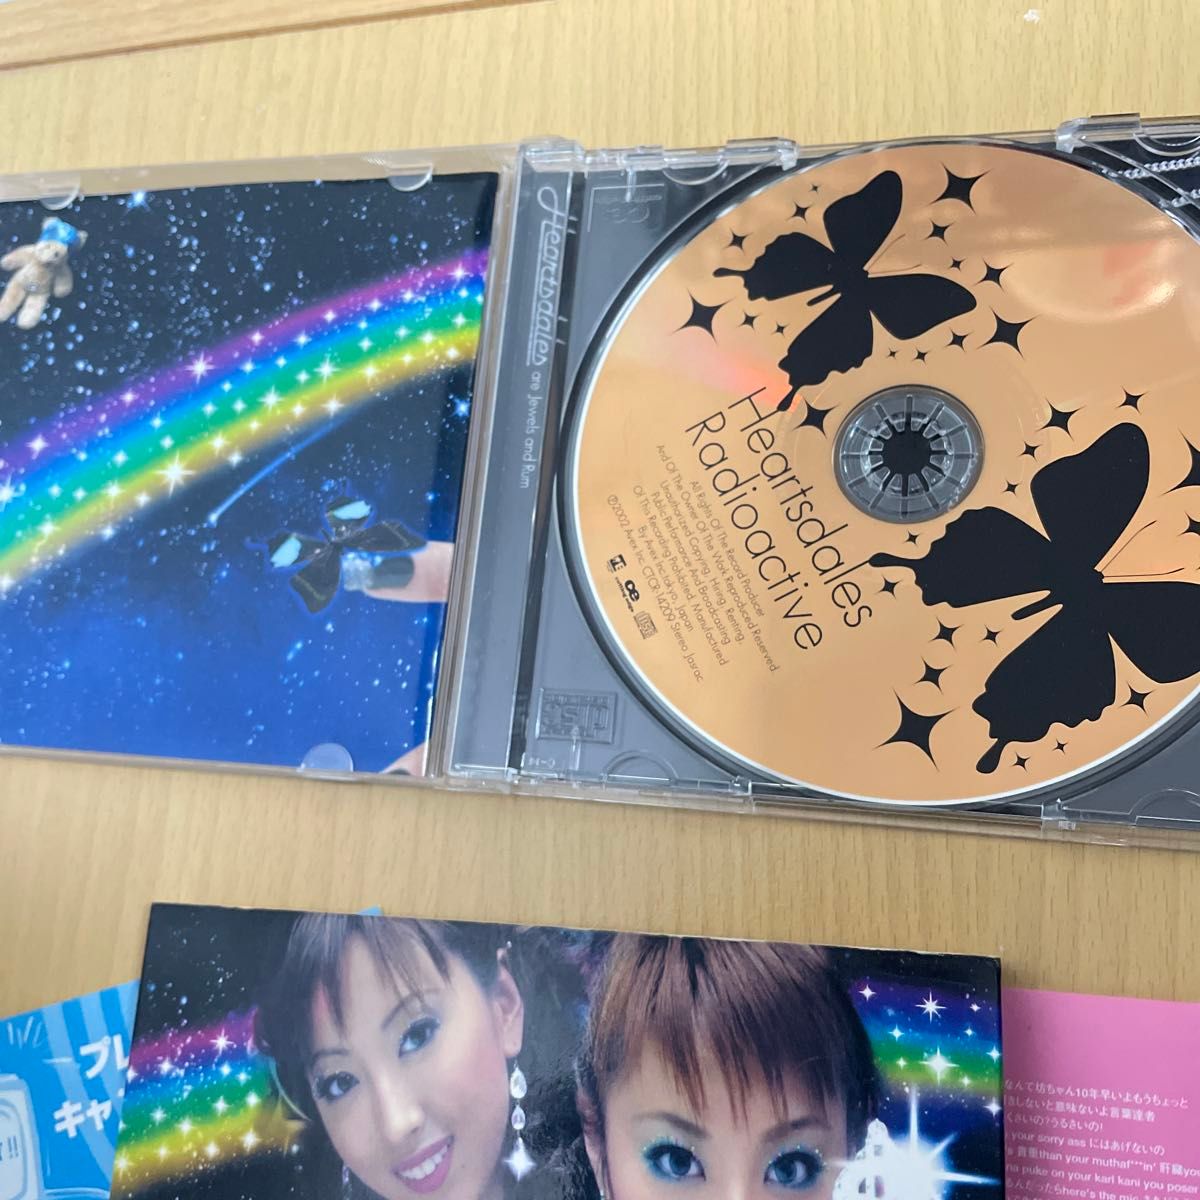 CD Ｈｅａｒｔｓｄａｌｅｓ　Ｒａｄｉｏａｃｔｉｖｅ　ハーツデイルズ　スリーブケース付き　送料込み